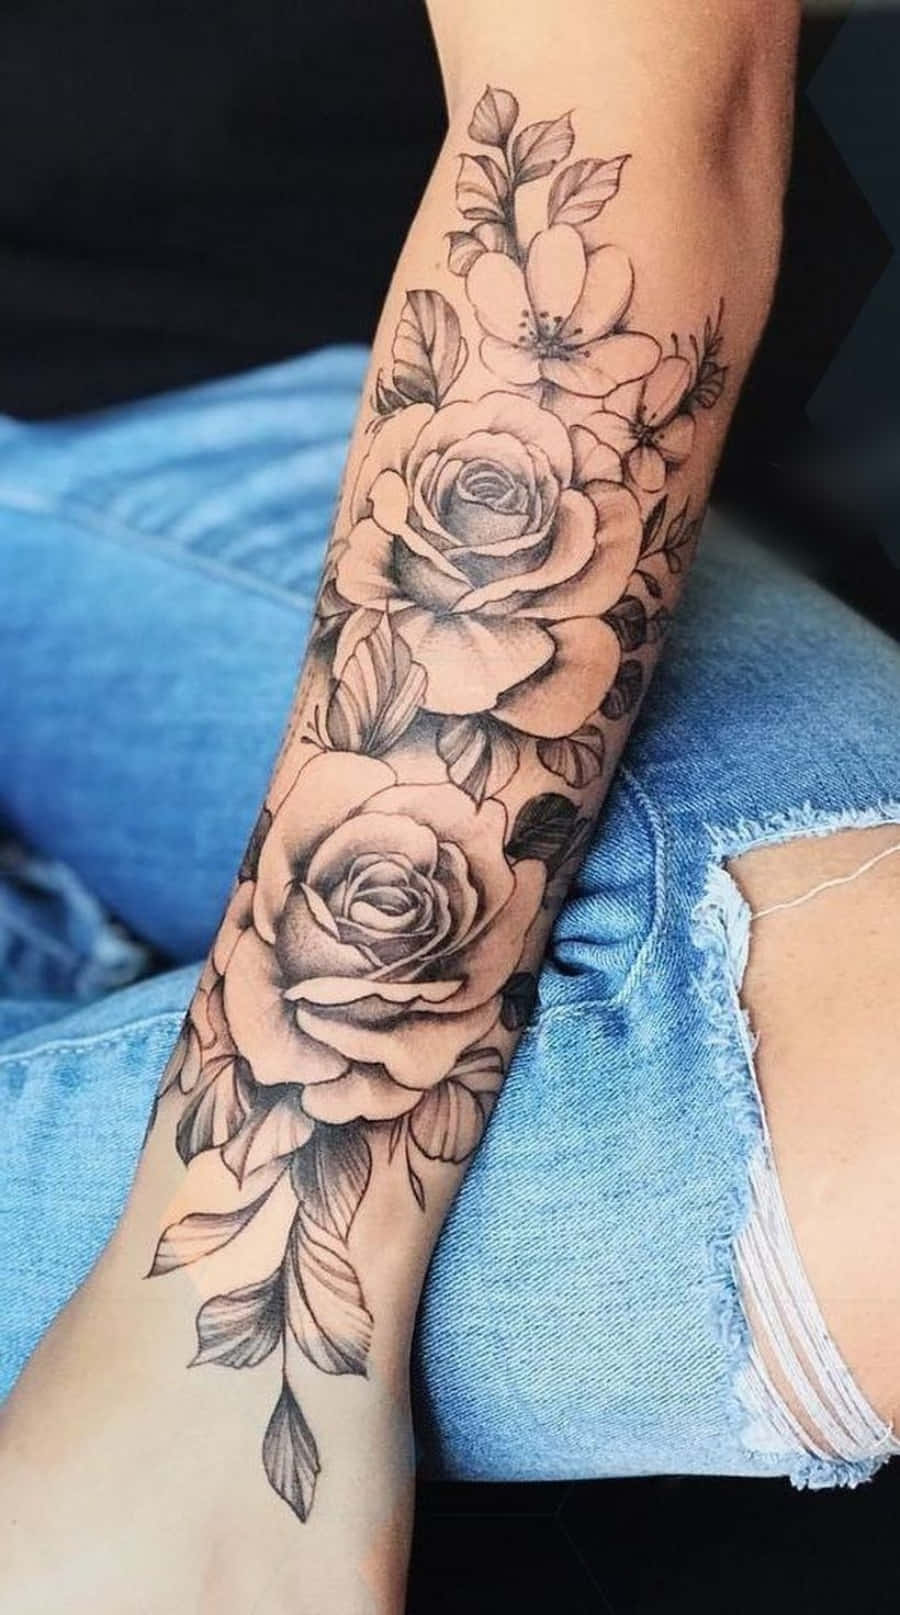 Sam J Tattoos  Upper arm floral piece     flowers floral tattoo  armtattoo inked stipple blackandgreywork lgbtq milfordct  milfordtattoo largetattoo tattoosforgirls  Facebook